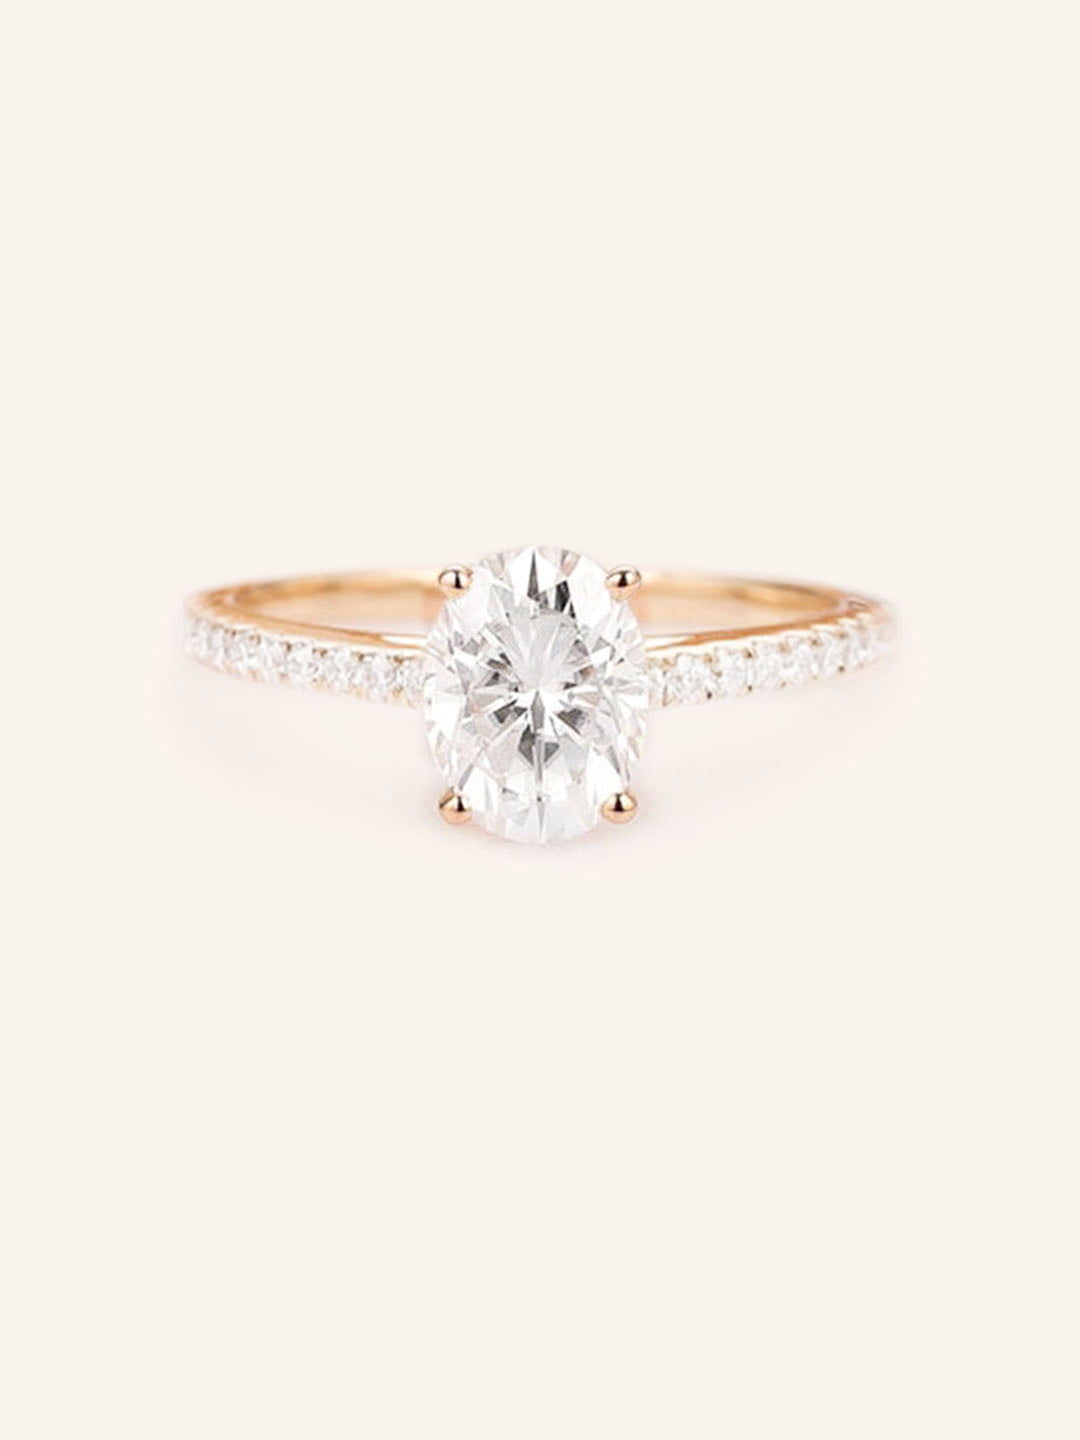 Morning Rose Oval Moissanite Diamond Engagement Ring